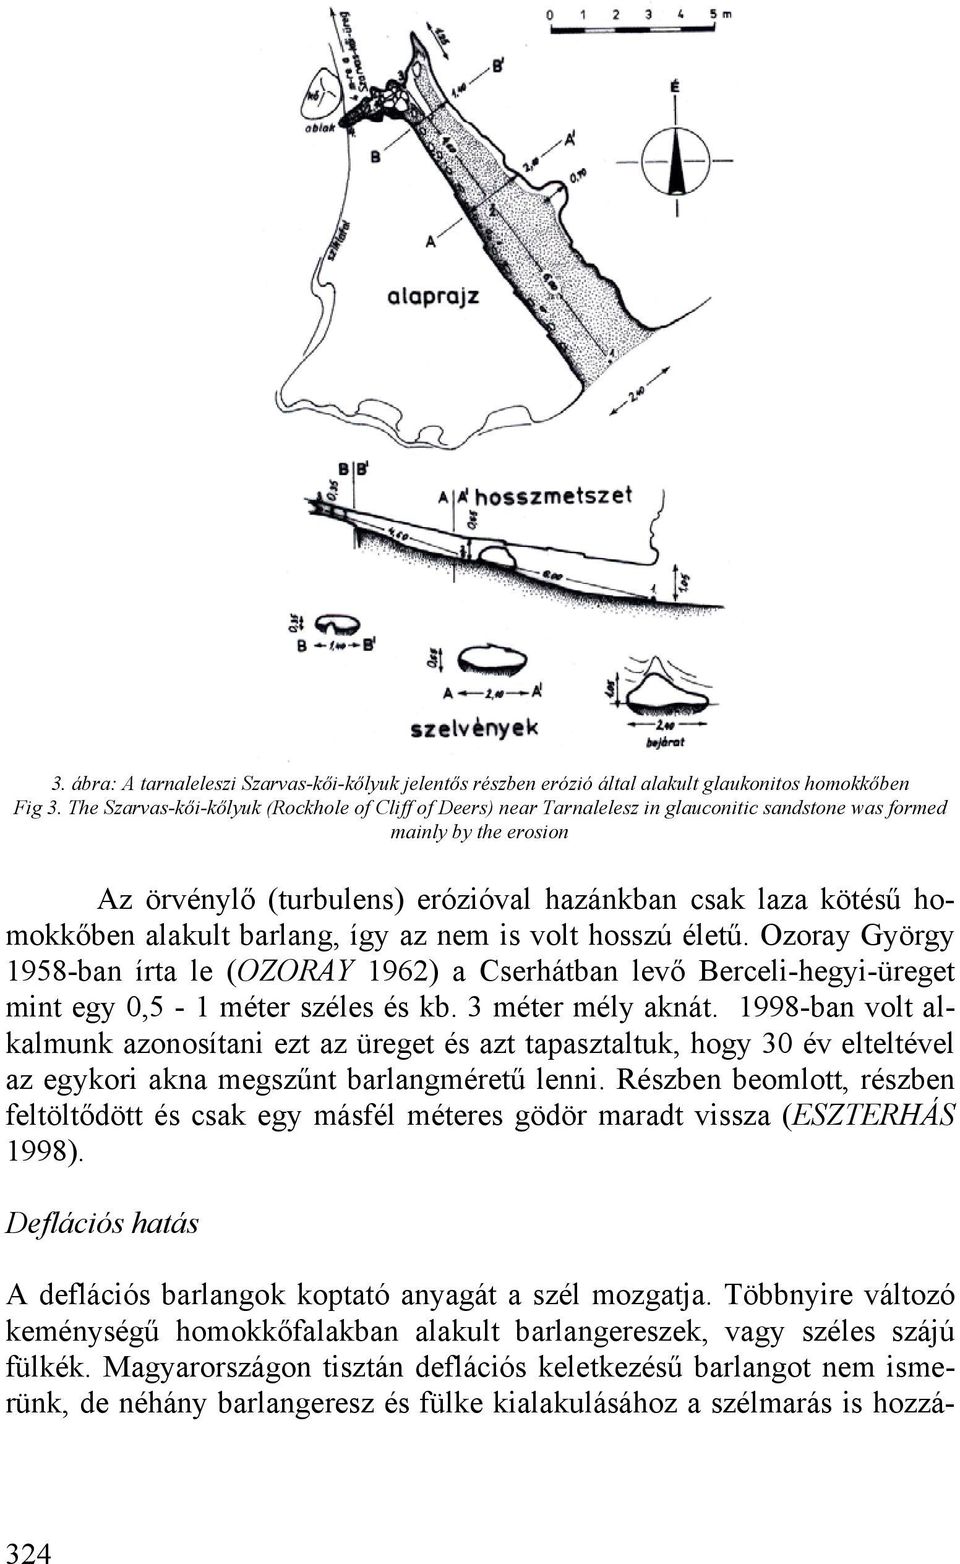 alakult barlang, így az nem is volt hosszú életű. Ozoray György 1958-ban írta le (OZORAY 1962) a Cserhátban levő Berceli-hegyi-üreget mint egy 0,5-1 méter széles és kb. 3 méter mély aknát.